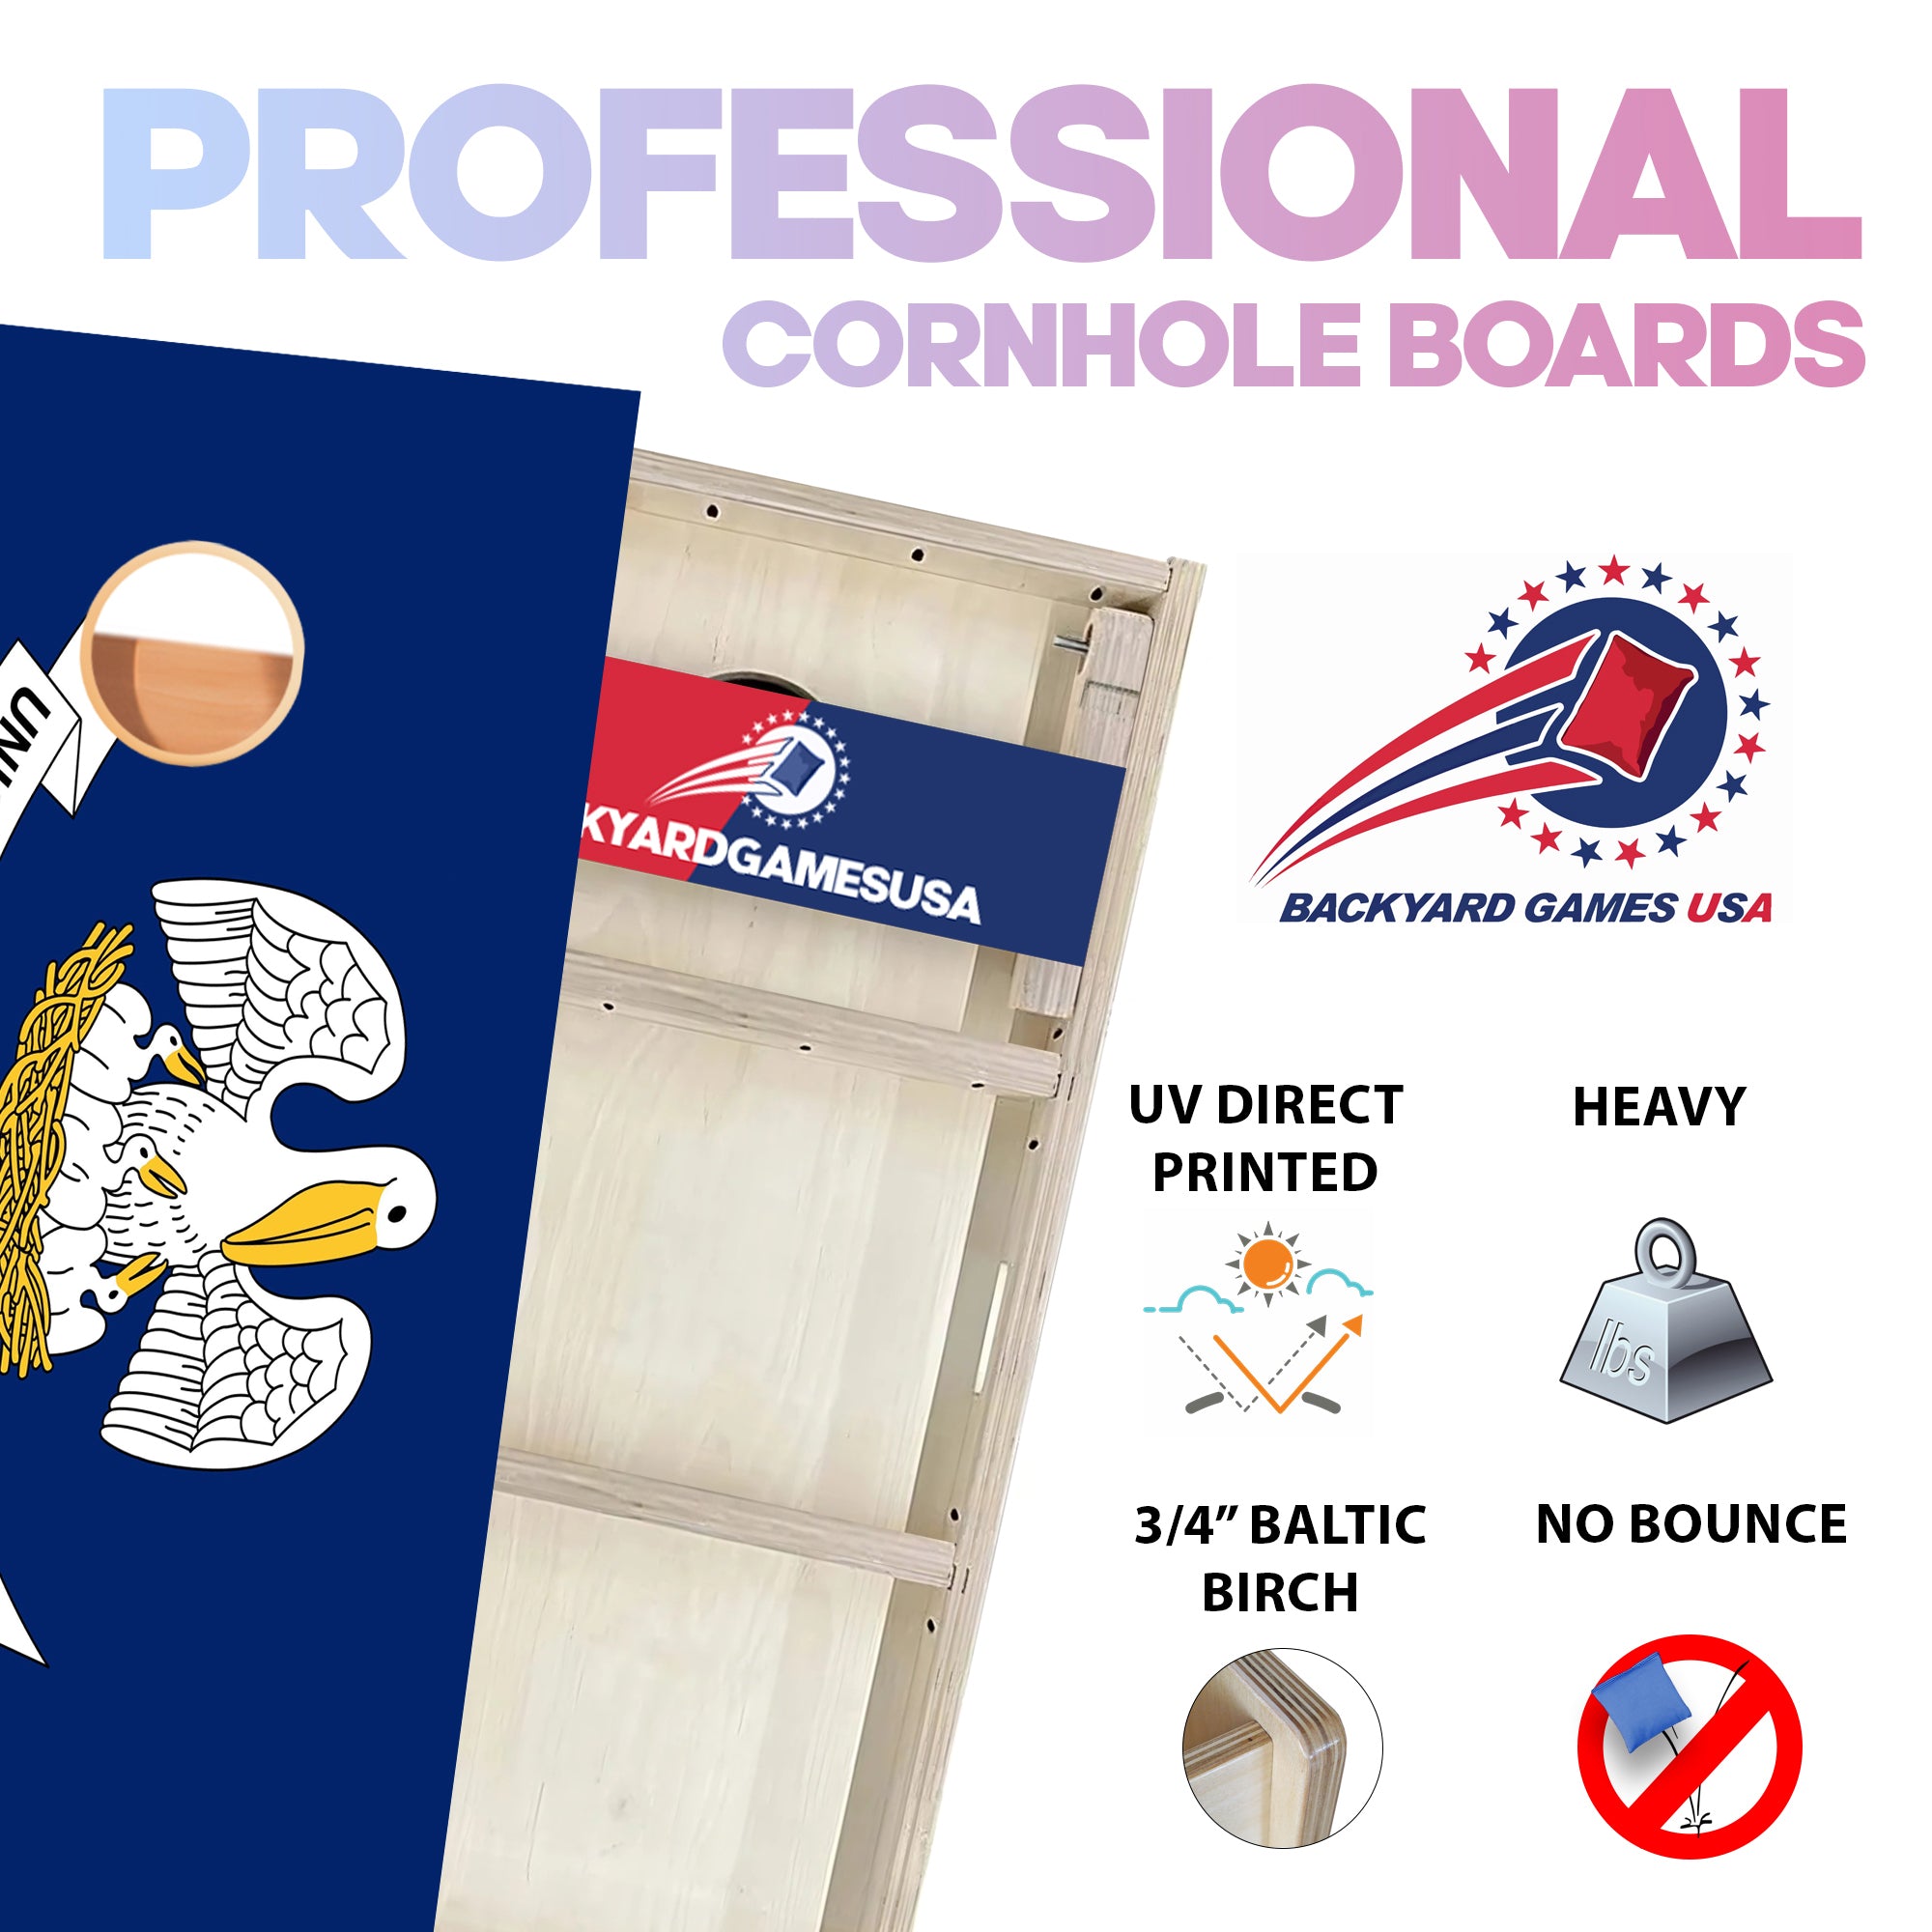 Louisiana Professional Cornhole Boards